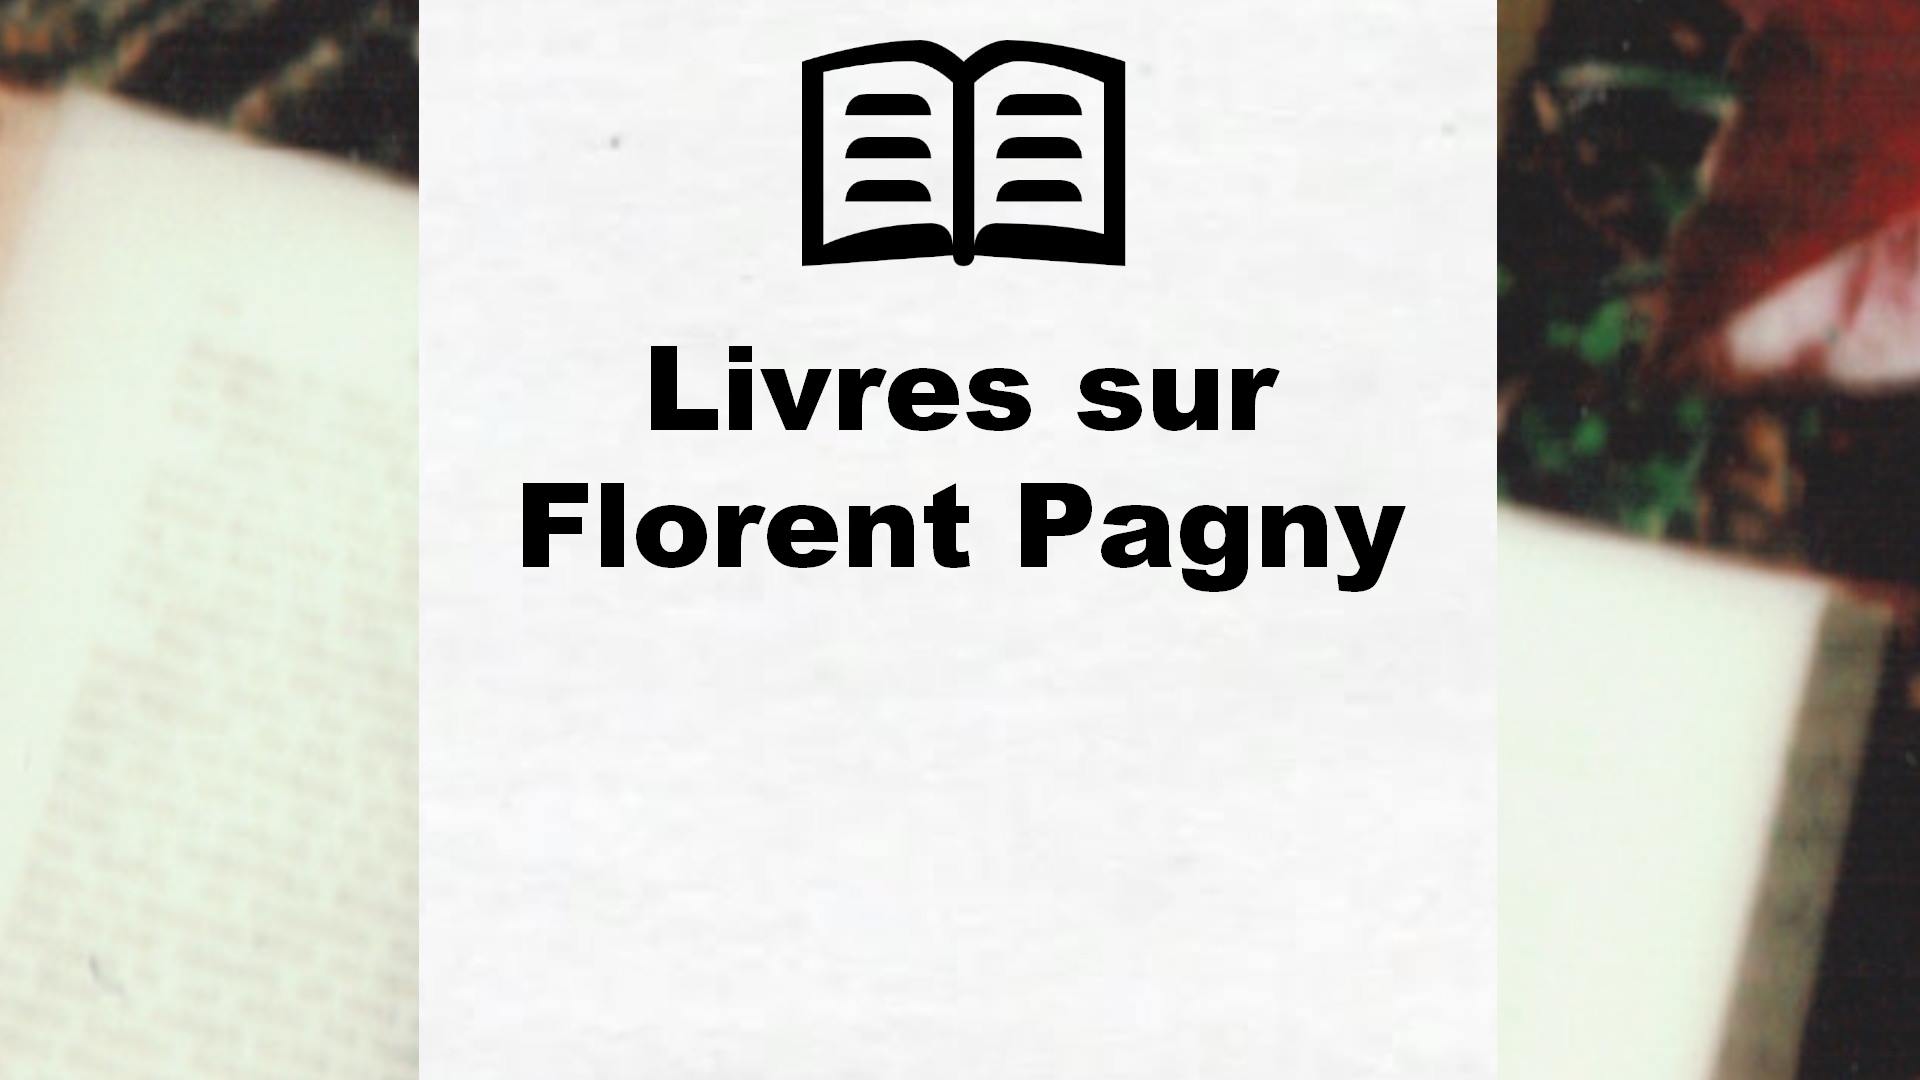 Livres sur Florent Pagny